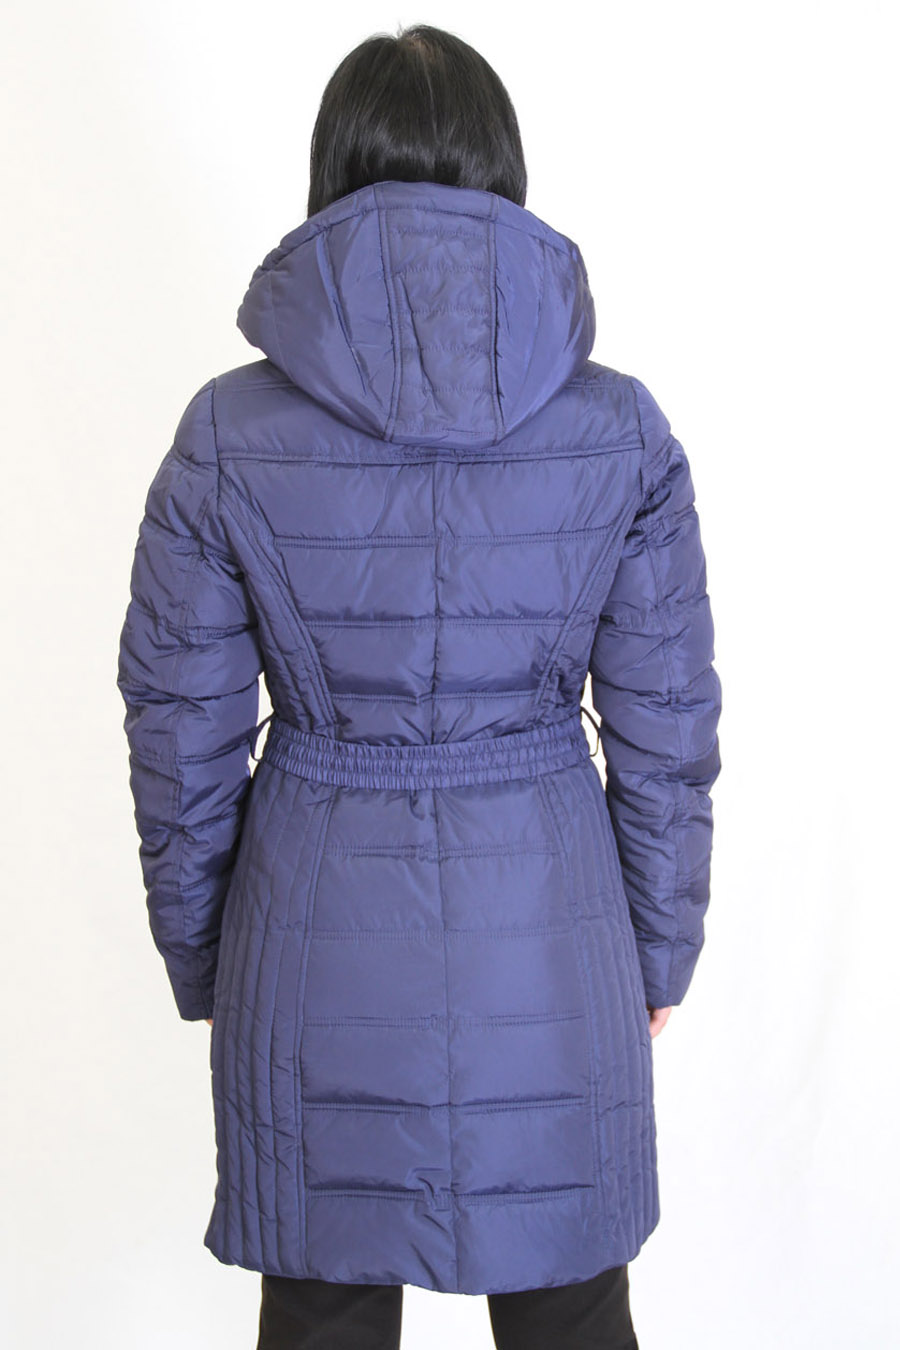 Стильная женская куртка (Snowimage)